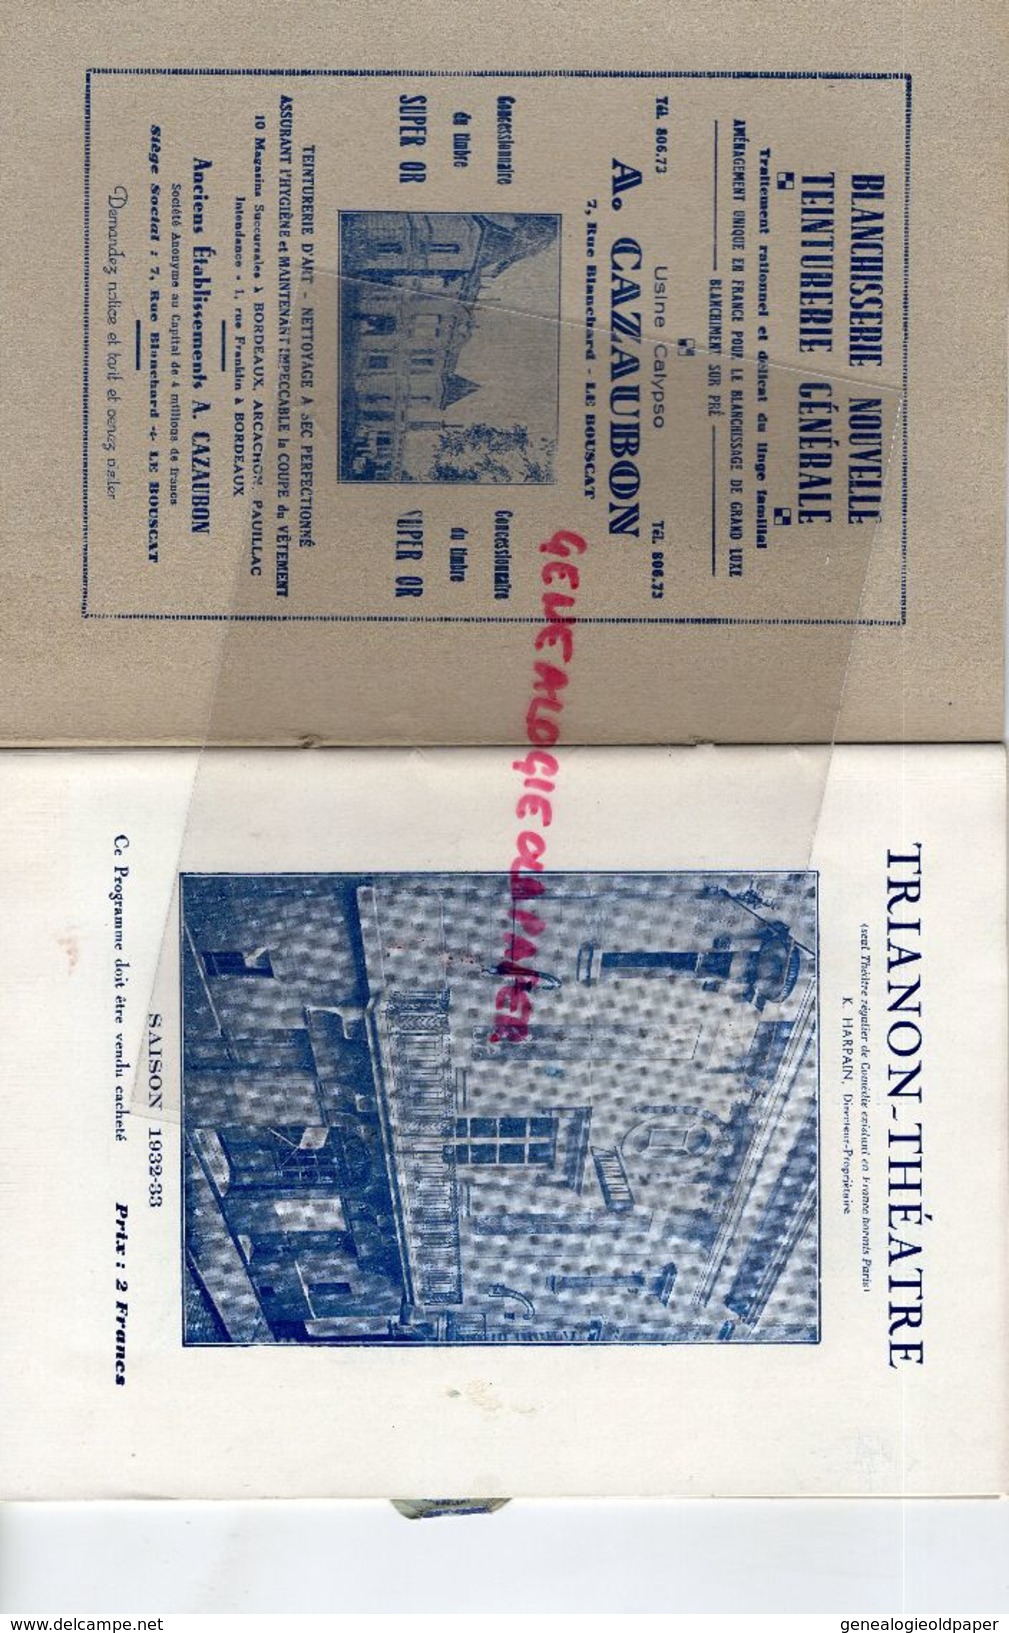 33- BORDEAUX- PROGRAMME THEATRE TRIANON SAISON 1932-33-A.CAZAUBON LE BOUSCAT-UNIVERSAL HOTEL-DARCY-CASTERA-LOUIS LEGER - Programme